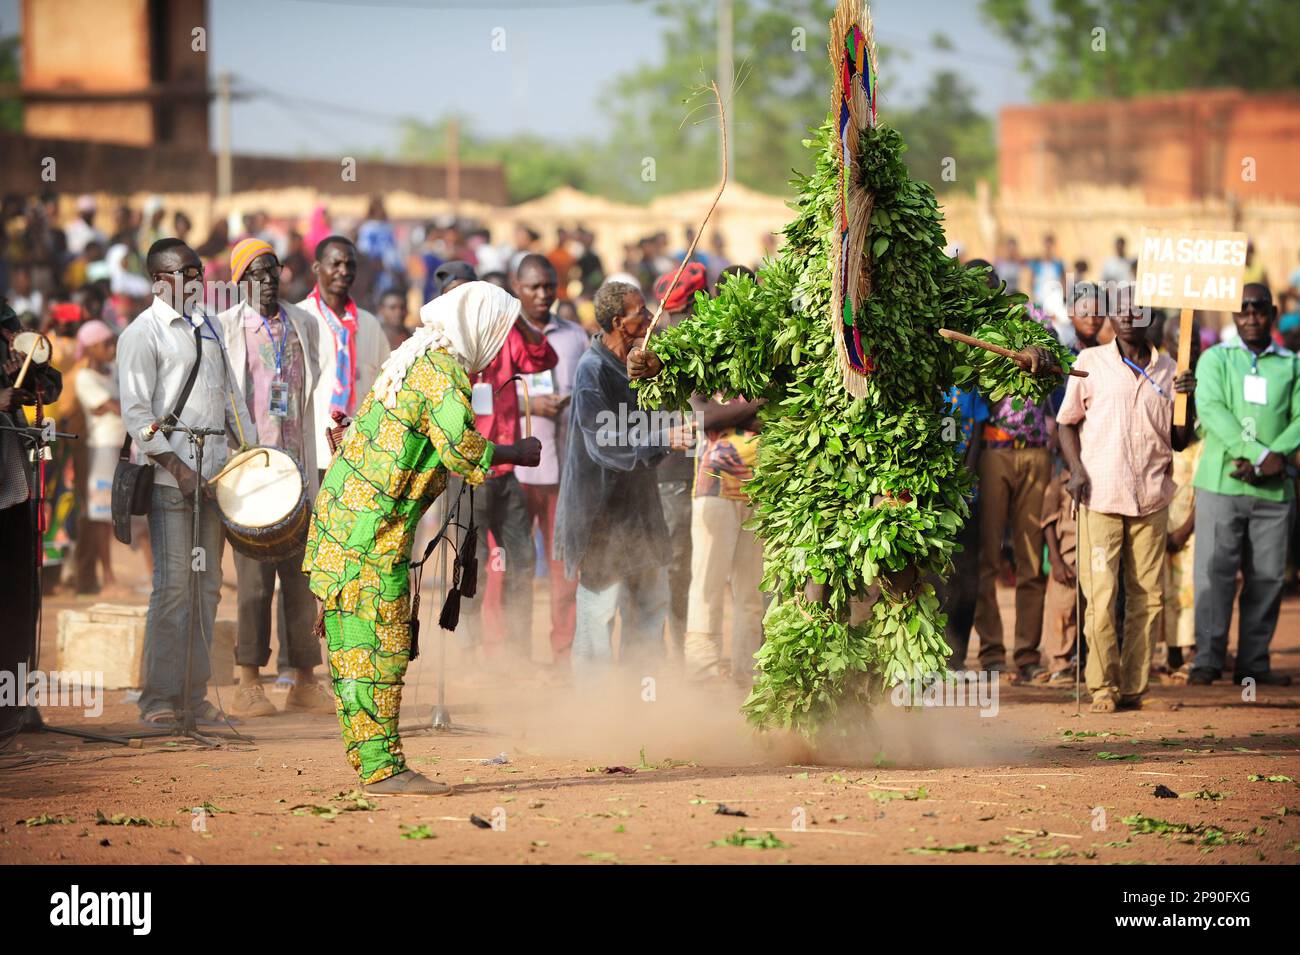 Un masque à feuilles et des musiciens se produisent au Festival FESTIMA à Dedougou, Burkina Faso Banque D'Images